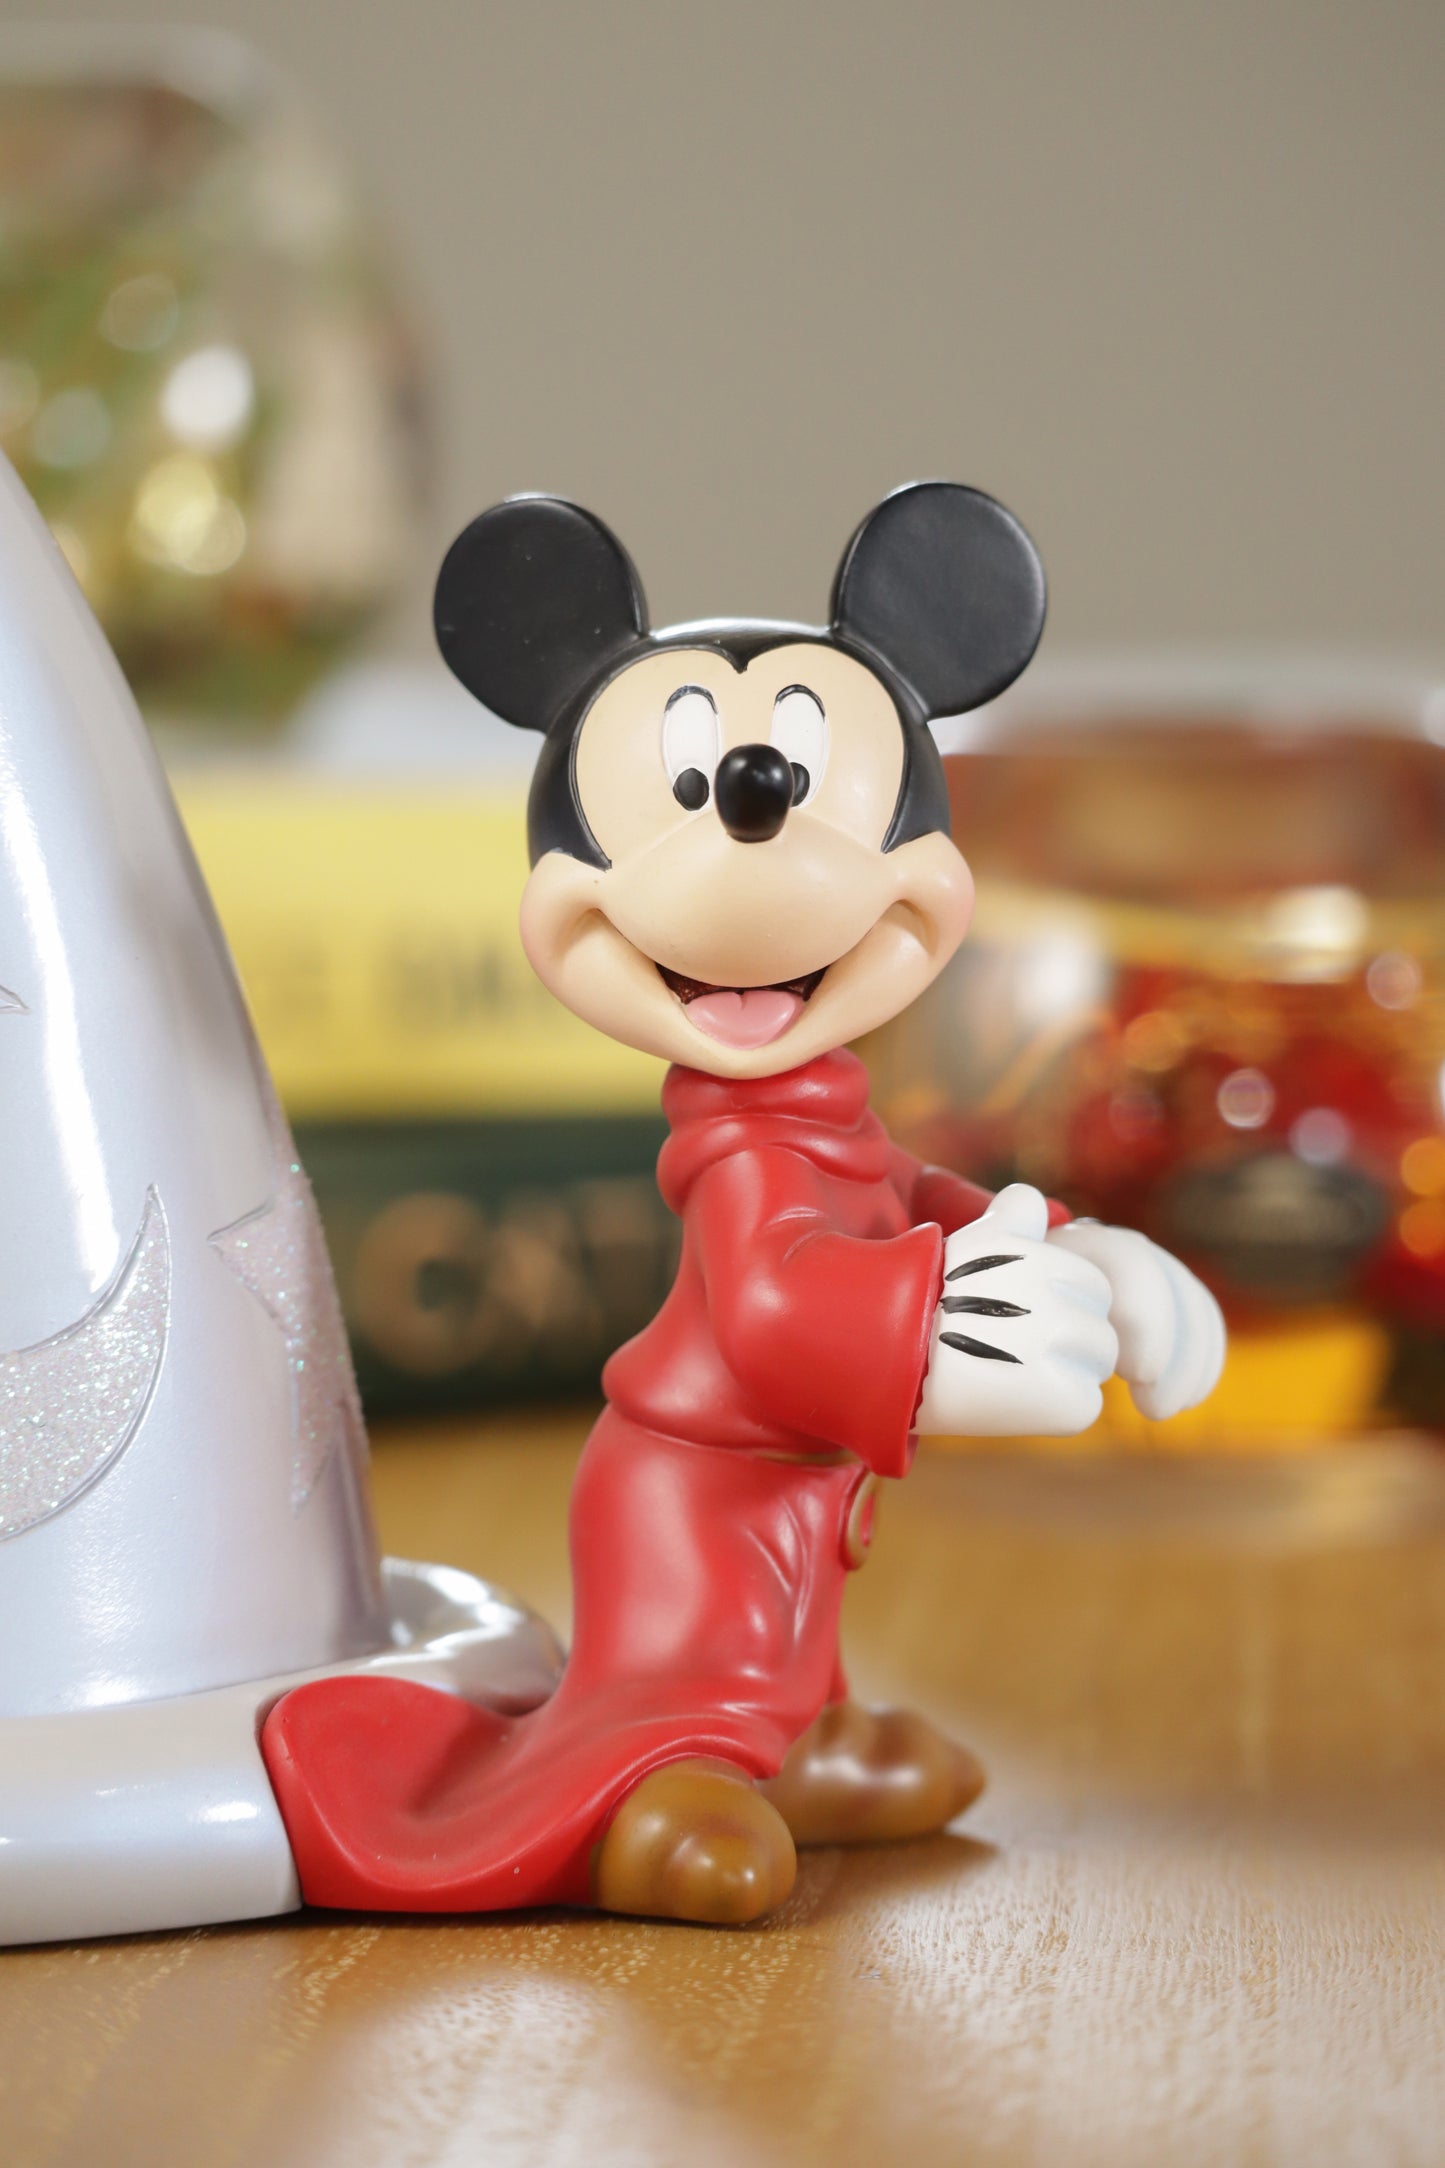 【ディズニー100周年記念】D100 Mickey Mouse ディズニーショーケース【enesco】